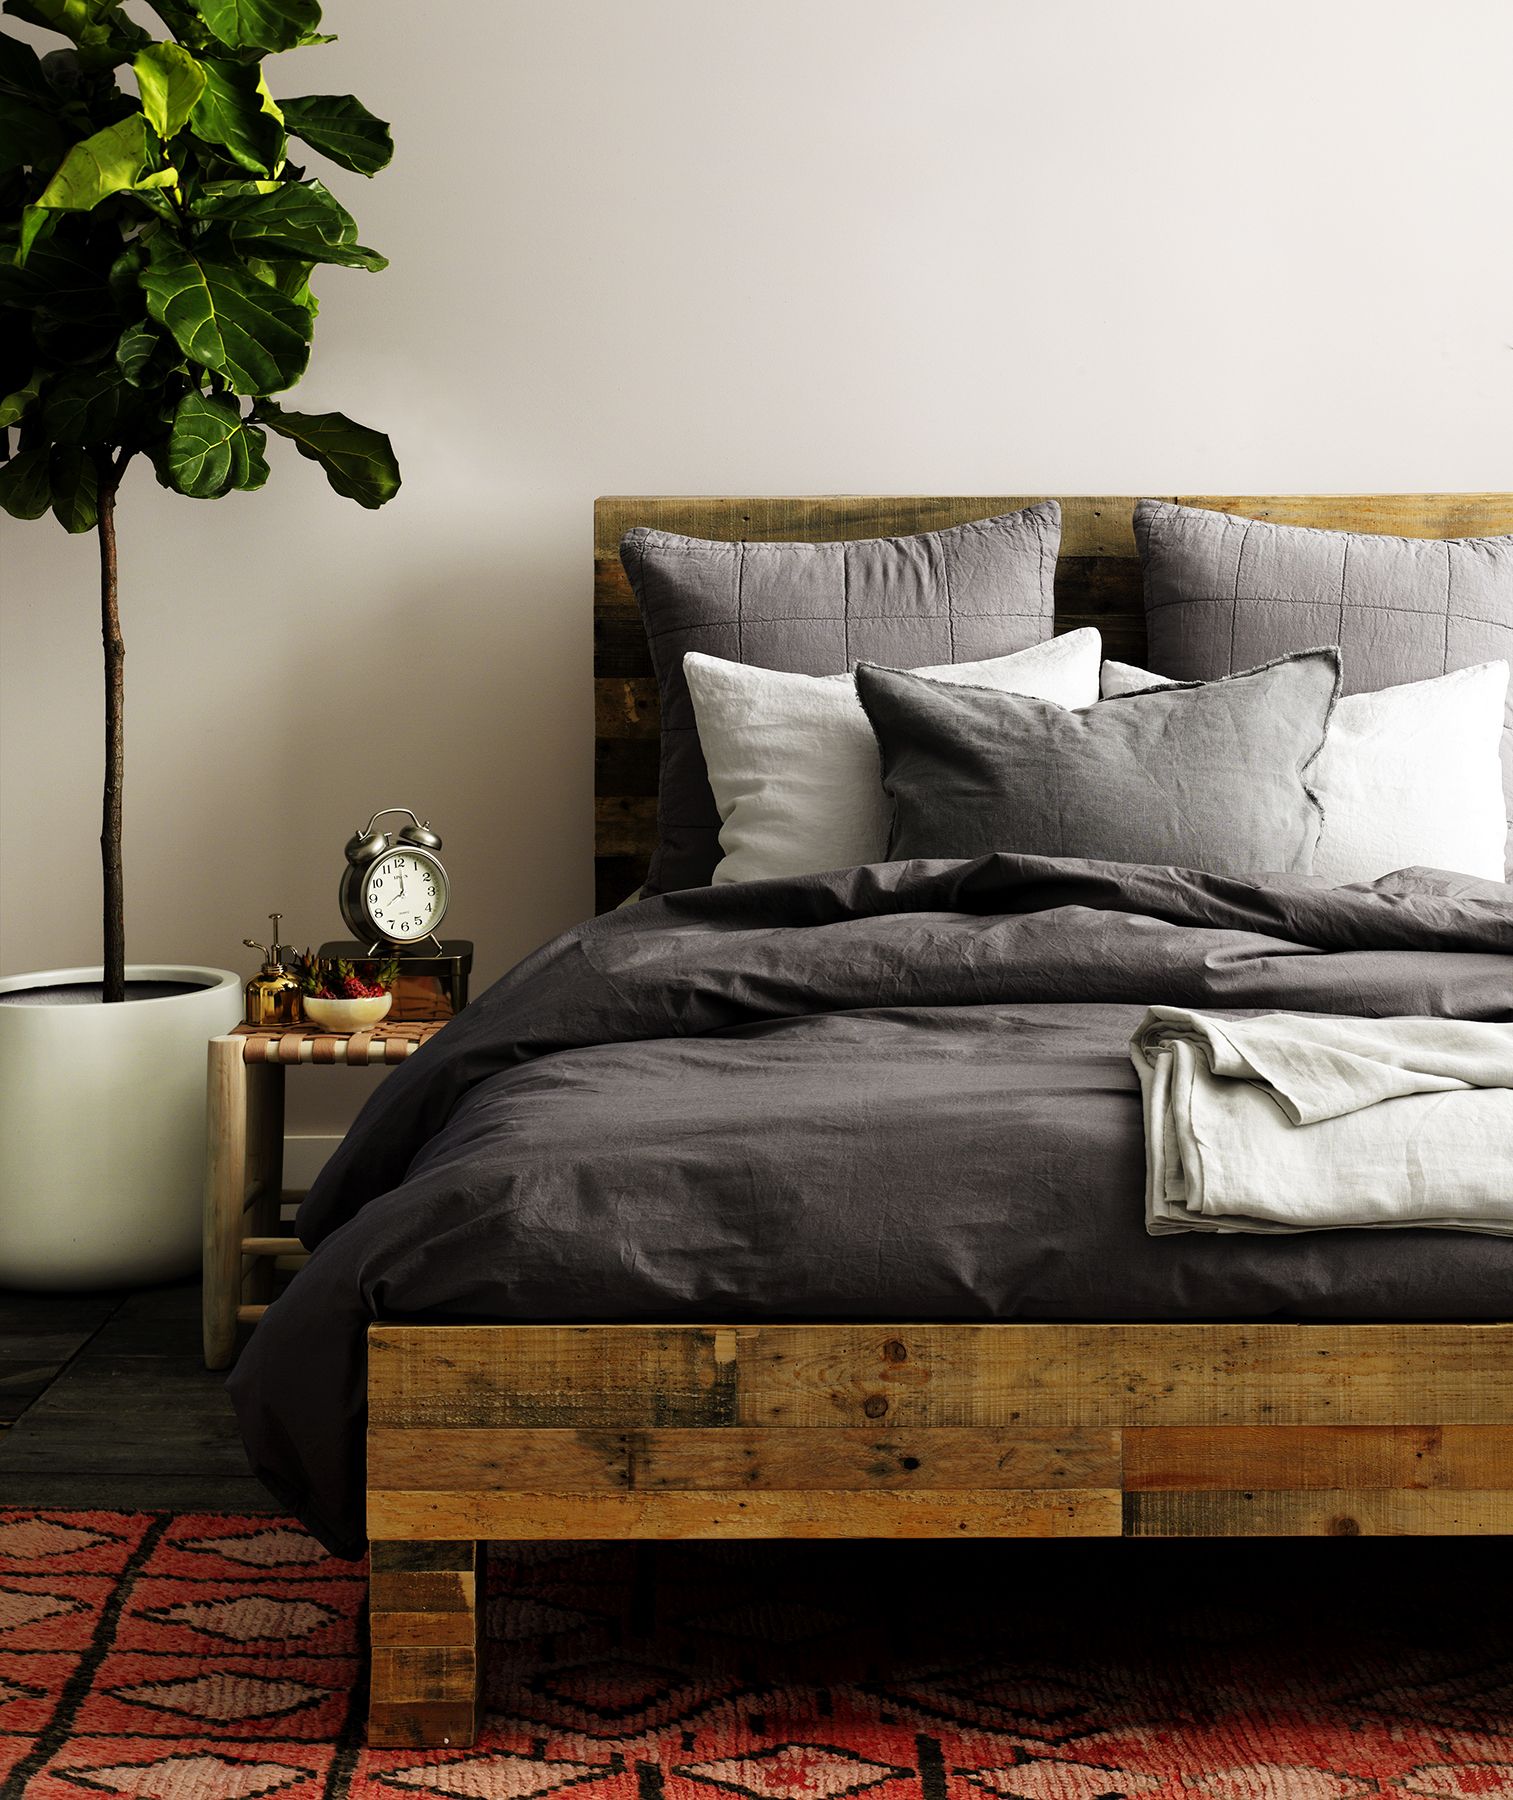 グレーの色合いのリネンと木製のベッド